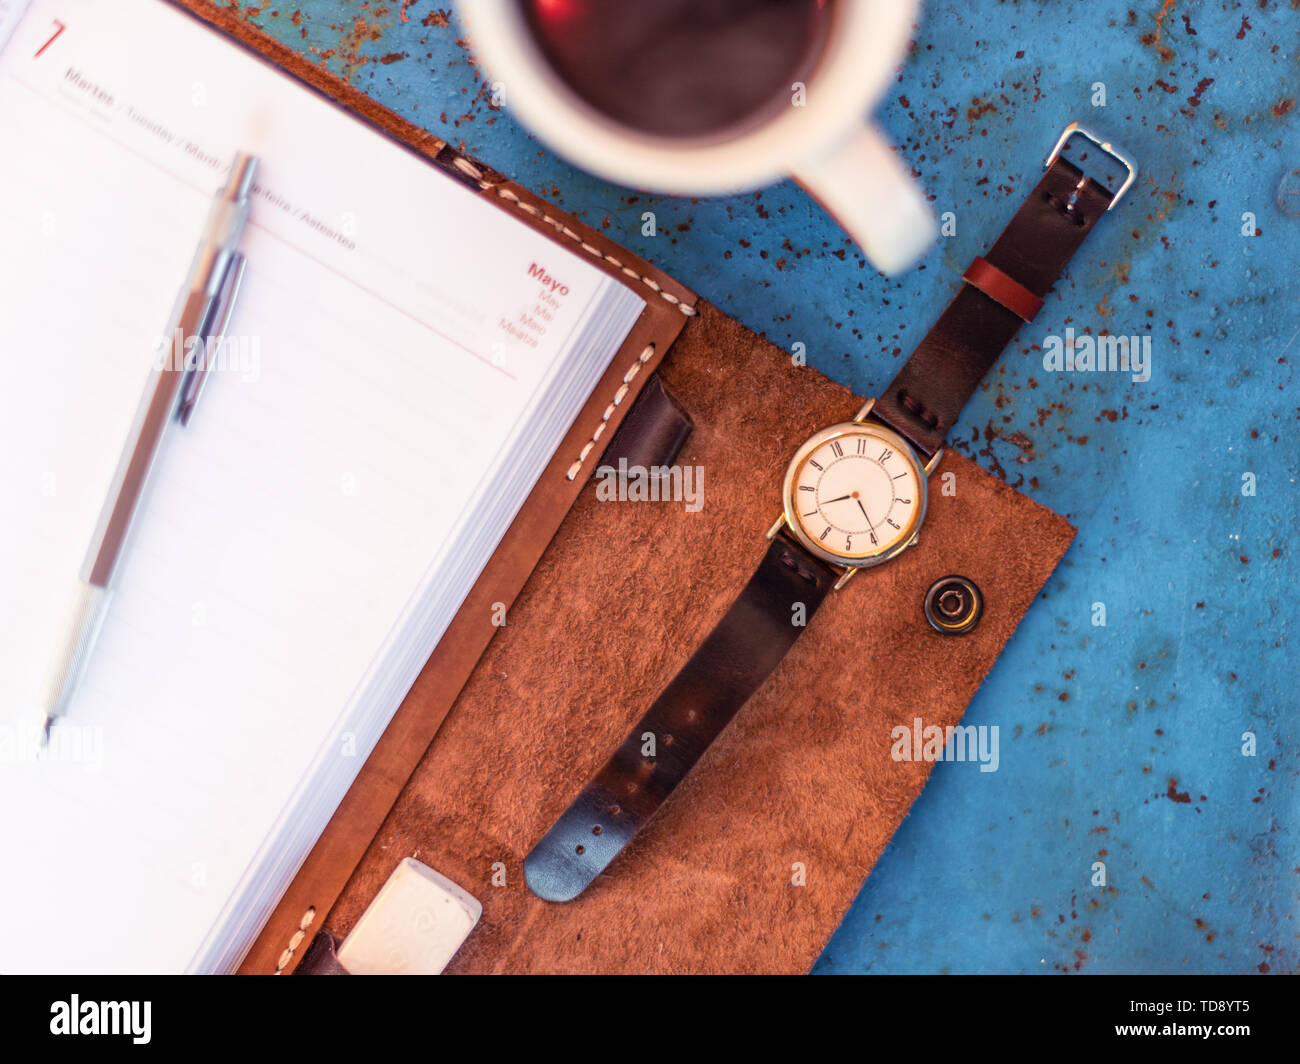 Reloj de pulsera de cuero vintage y agenda en rústico banco de metal azul sugiriendo el tiempo es 07.00, una taza de café en el borde del bastidor. Foto de stock